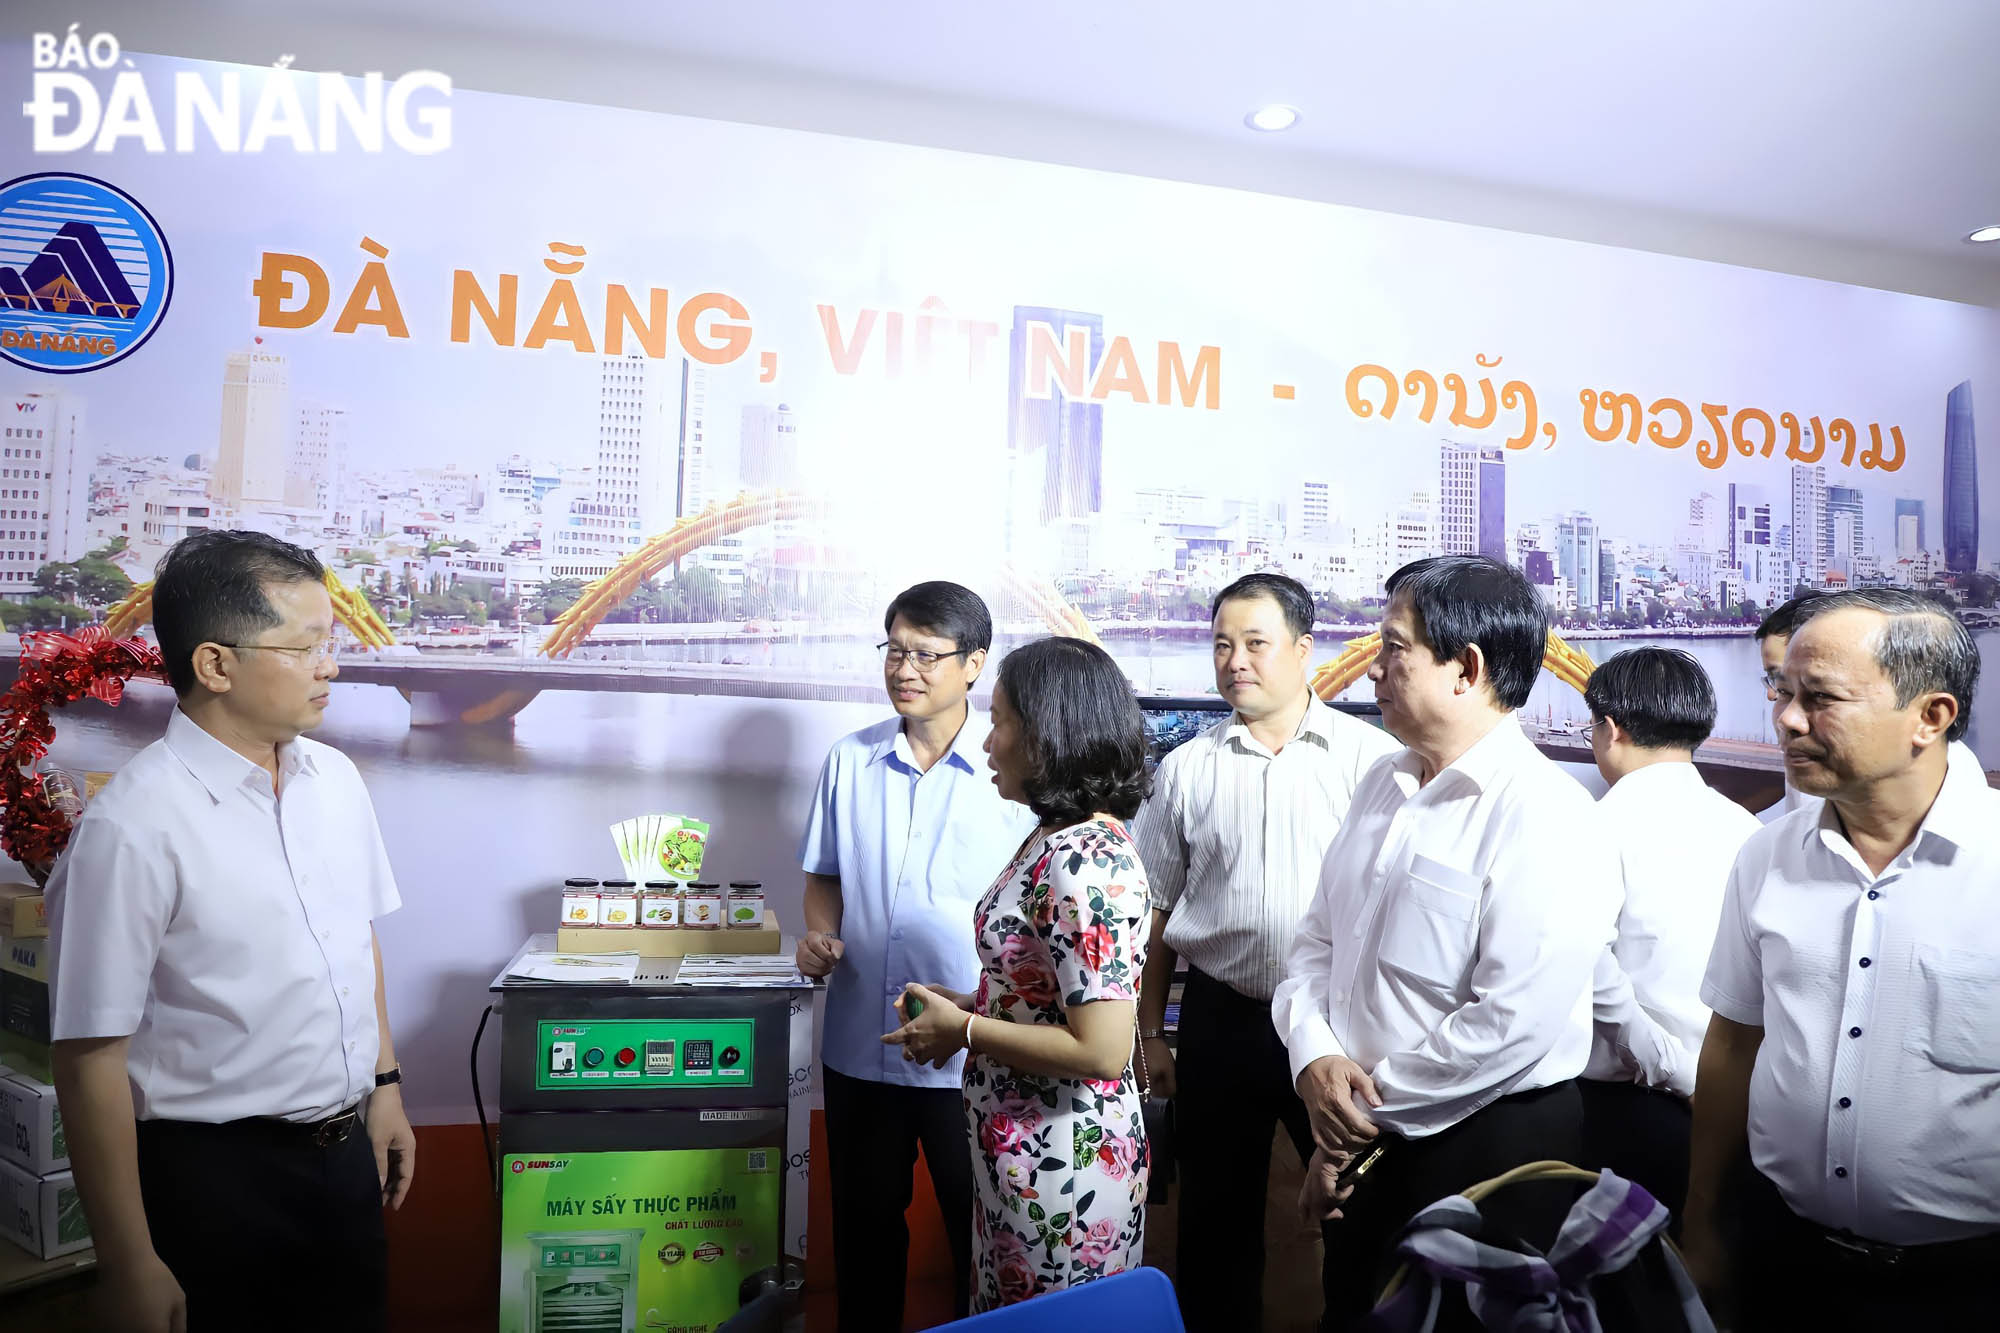 Bí thư Thành ủy Nguyễn Văn Quảng đề nghị Sở Công thương thành phố kết nối, để doanh nghiệp Đà Nẵng tiếp cận nhiều hơn nữa thị trường Sê Kông. Ảnh: NGỌC PHÚ